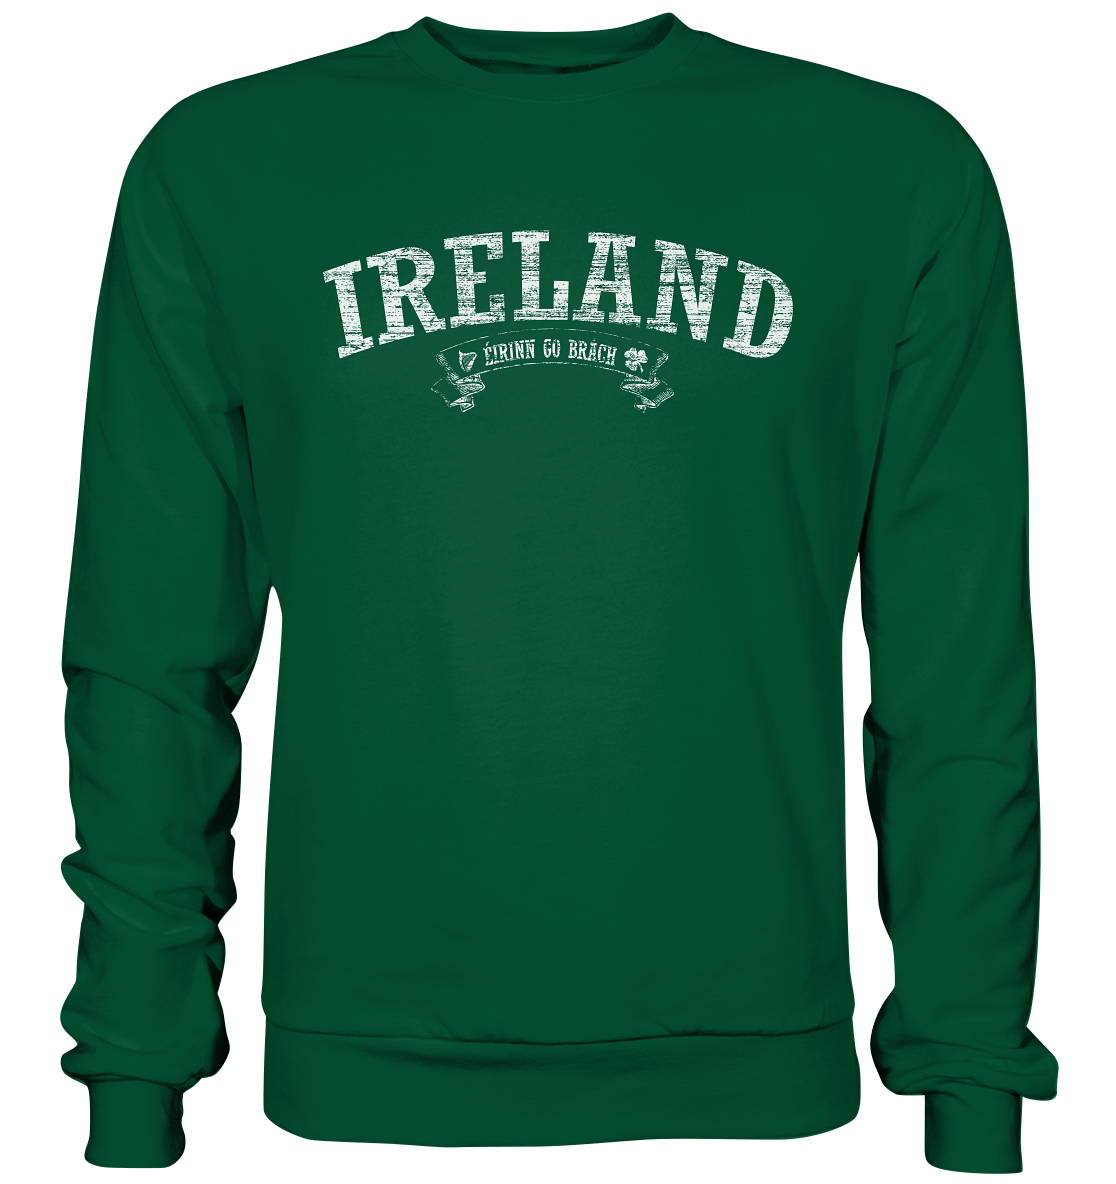 "Ireland - Éirinn go brách" - Basic Sweatshirt